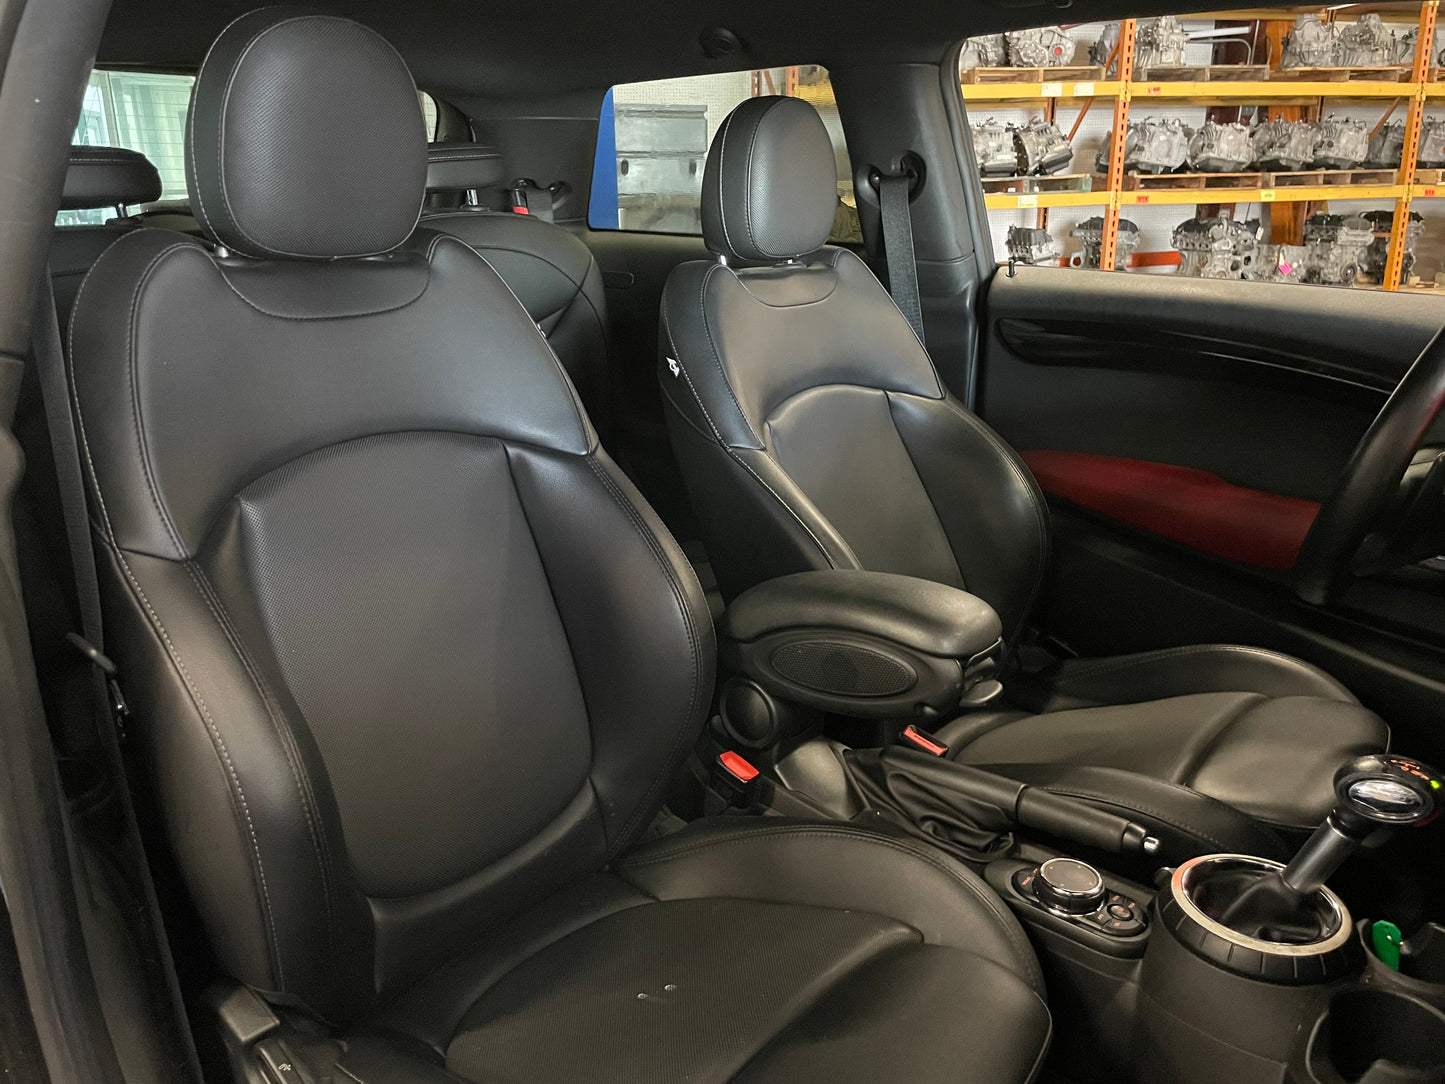 2015 MINI Cooper S, New Parts Car (July 2023) Stk #390